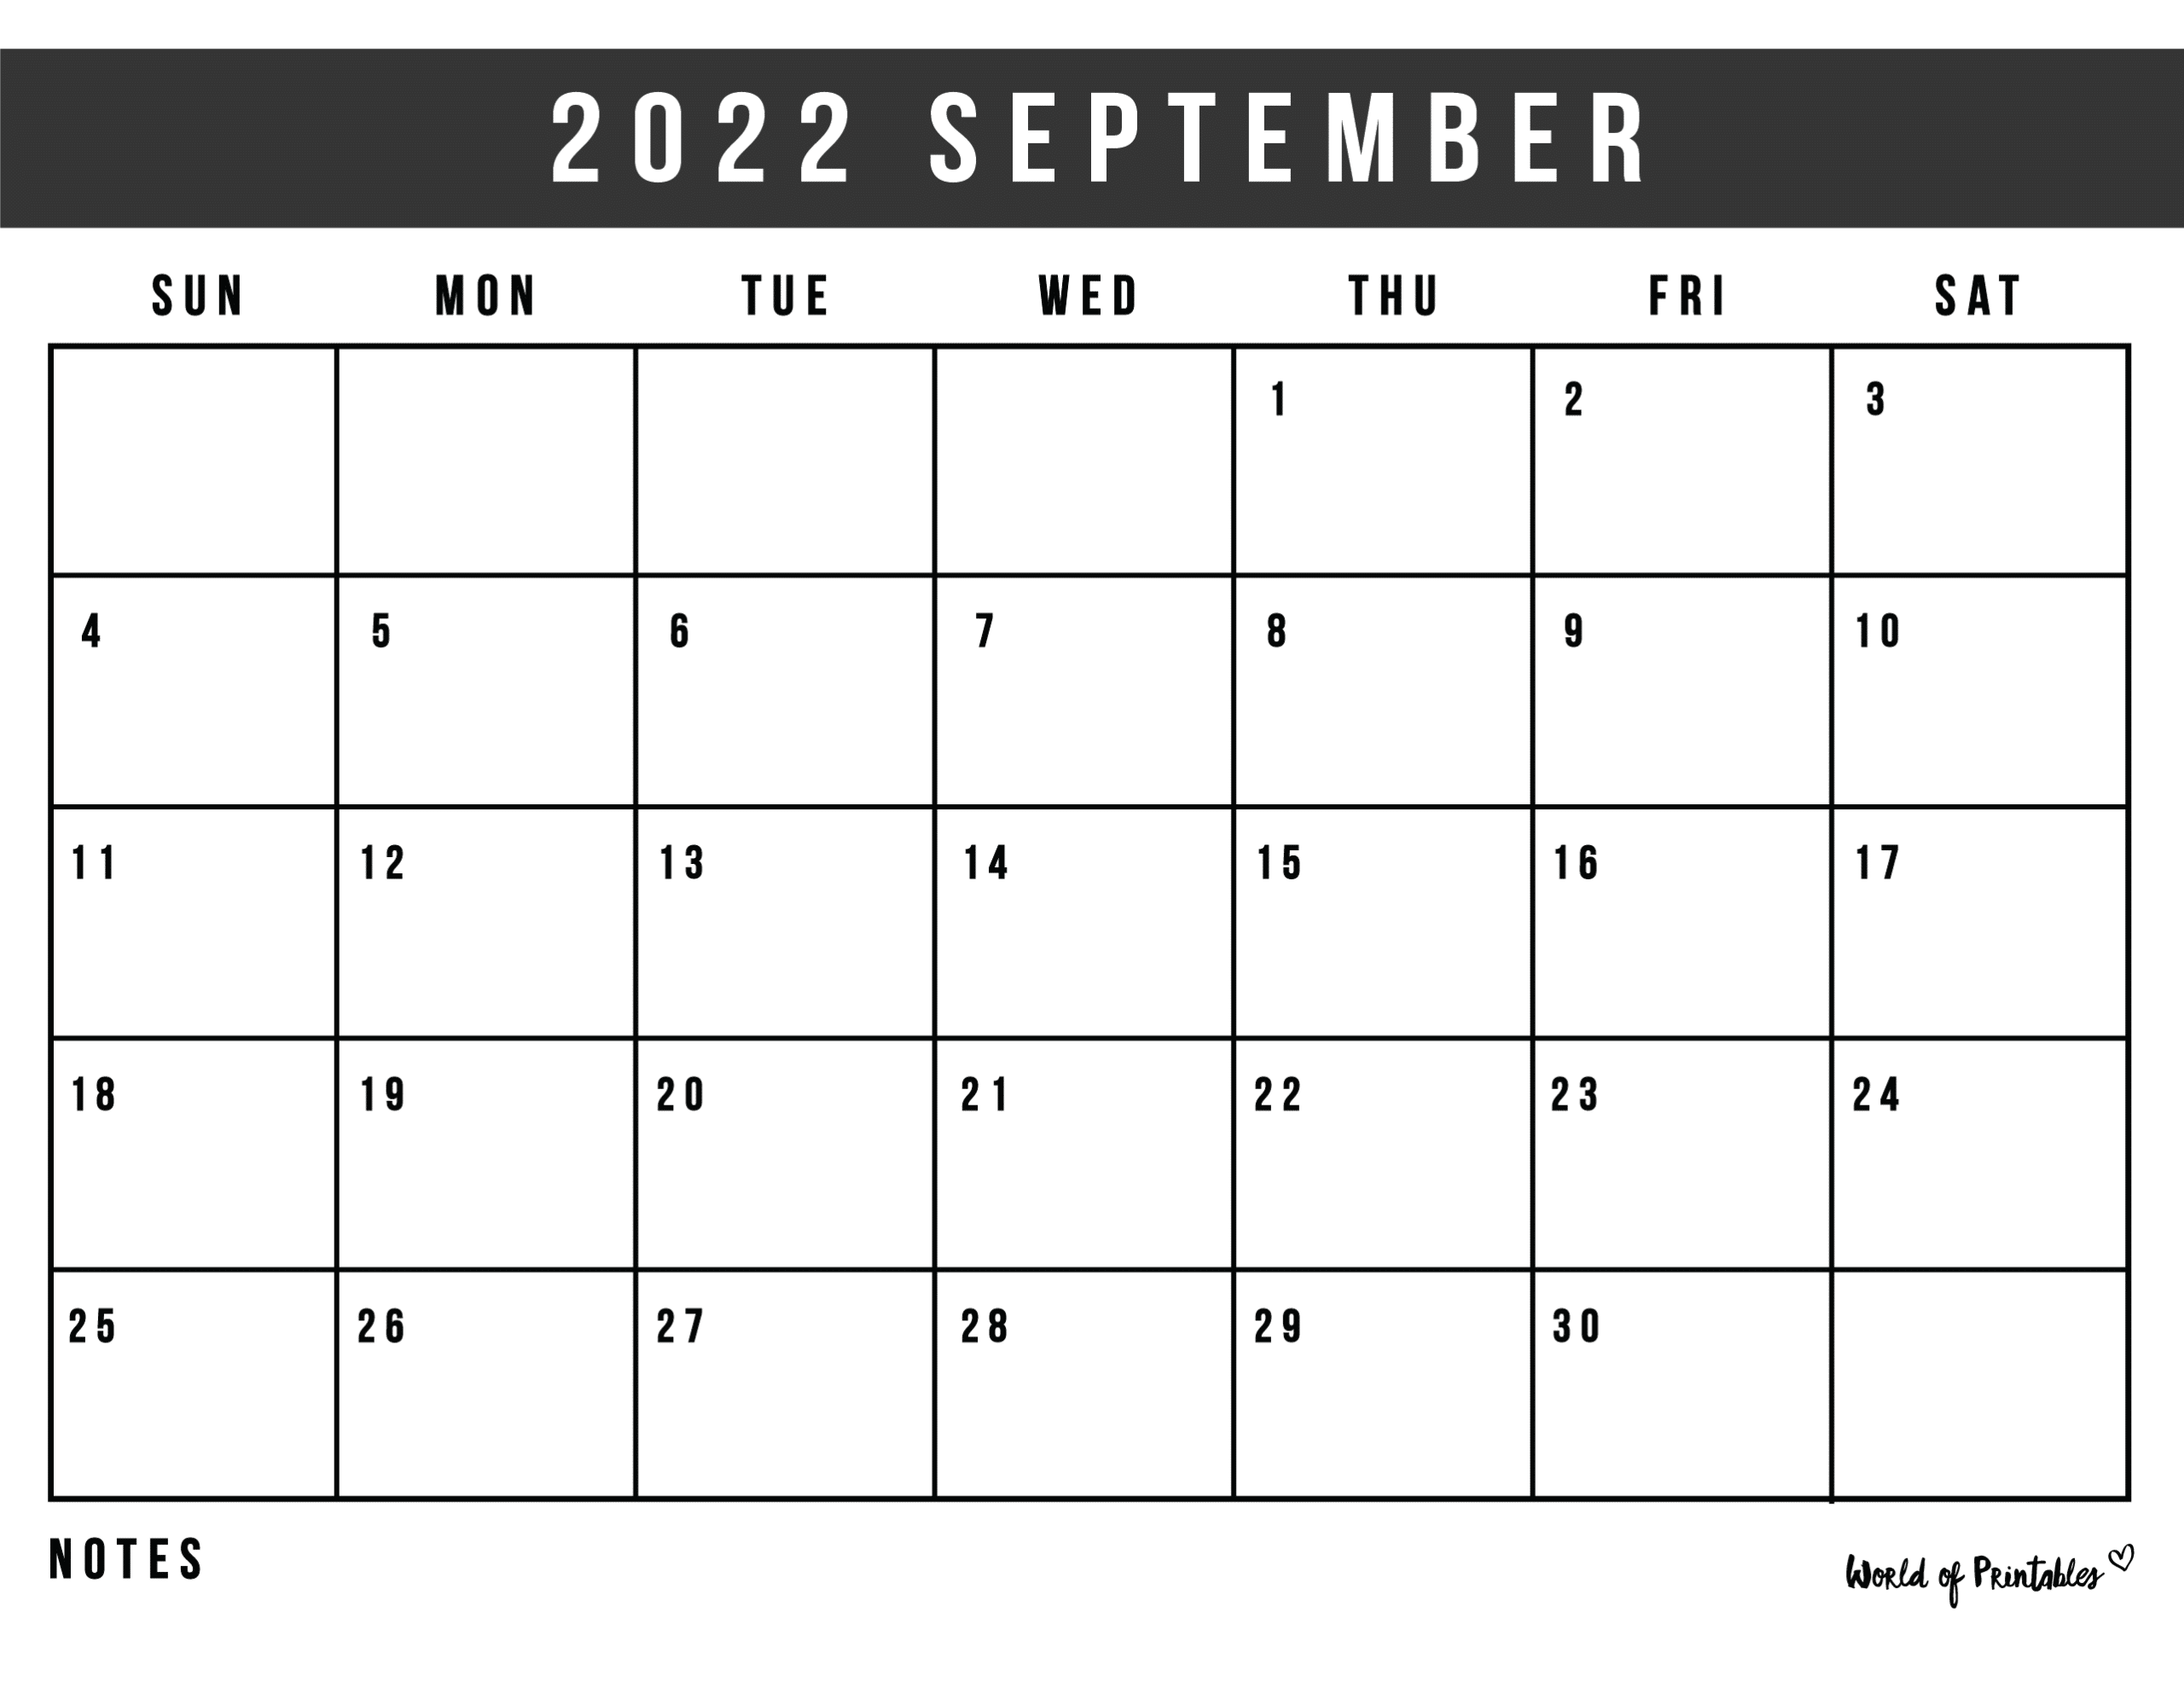 September 2022 Calendar Waterproof Free Printable September 2022 Calendars - World Of Printables